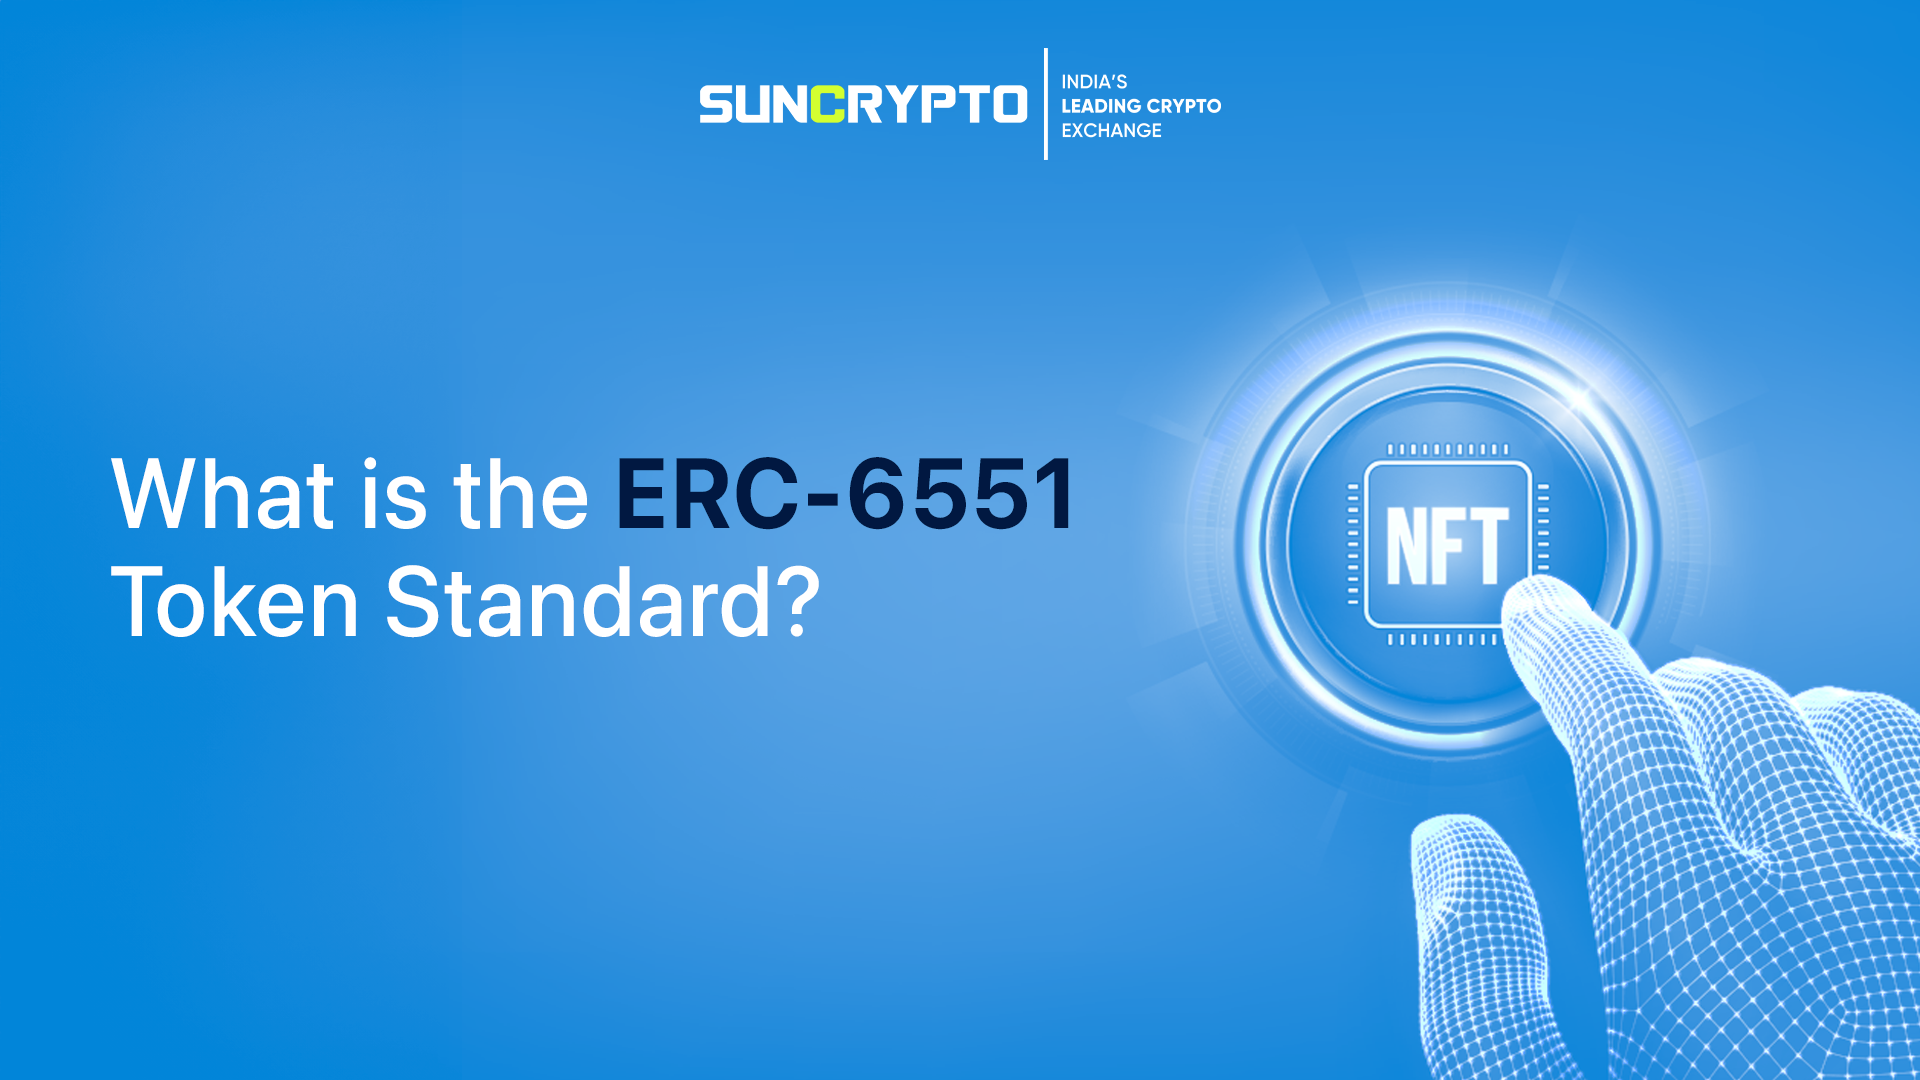 ERC-6551 token standard